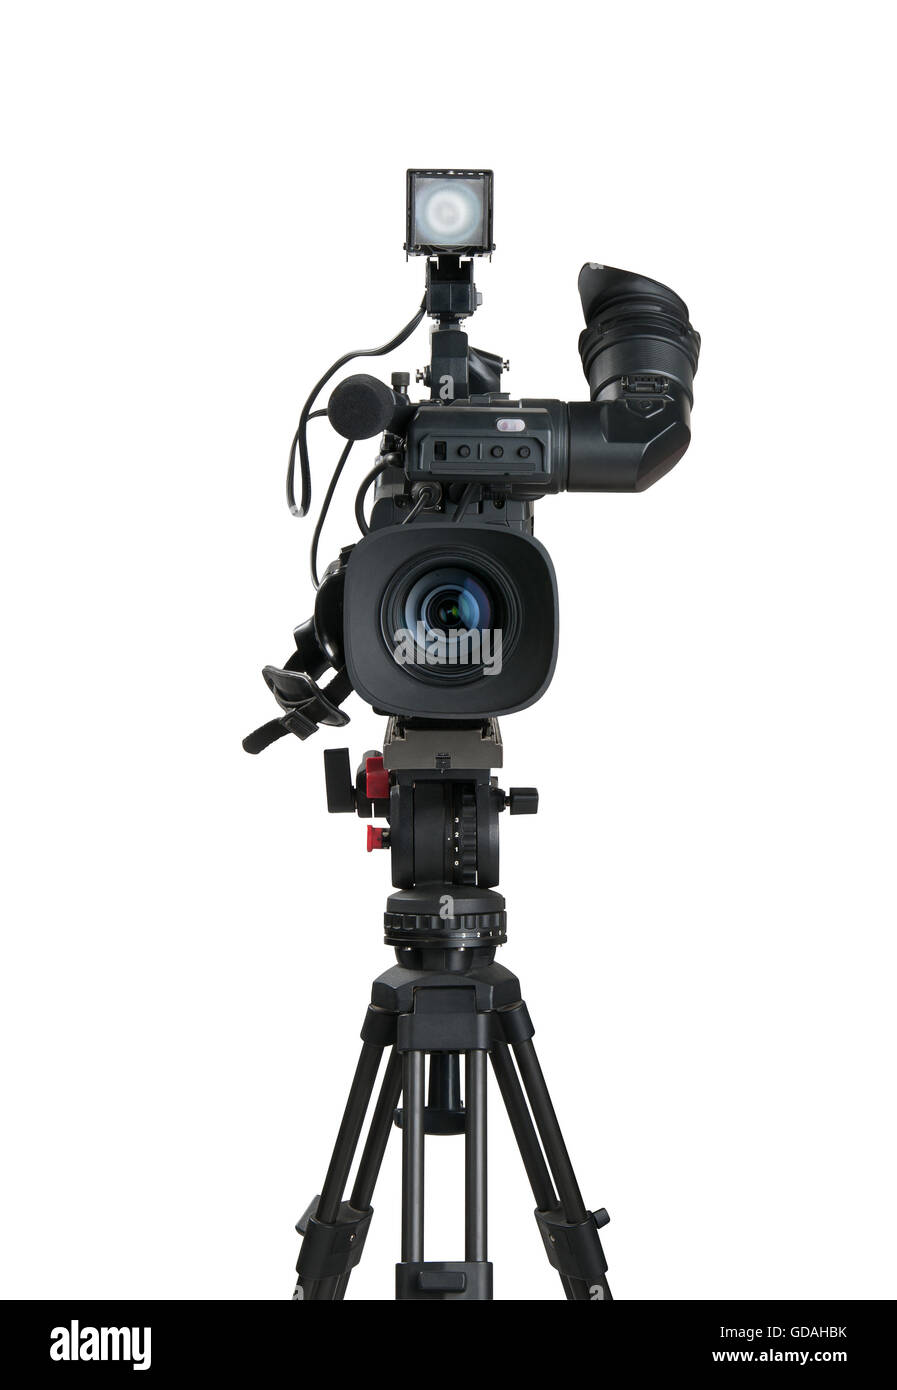 Caméra vidéo numérique professionnelle, isolé sur fond blanc Banque D'Images